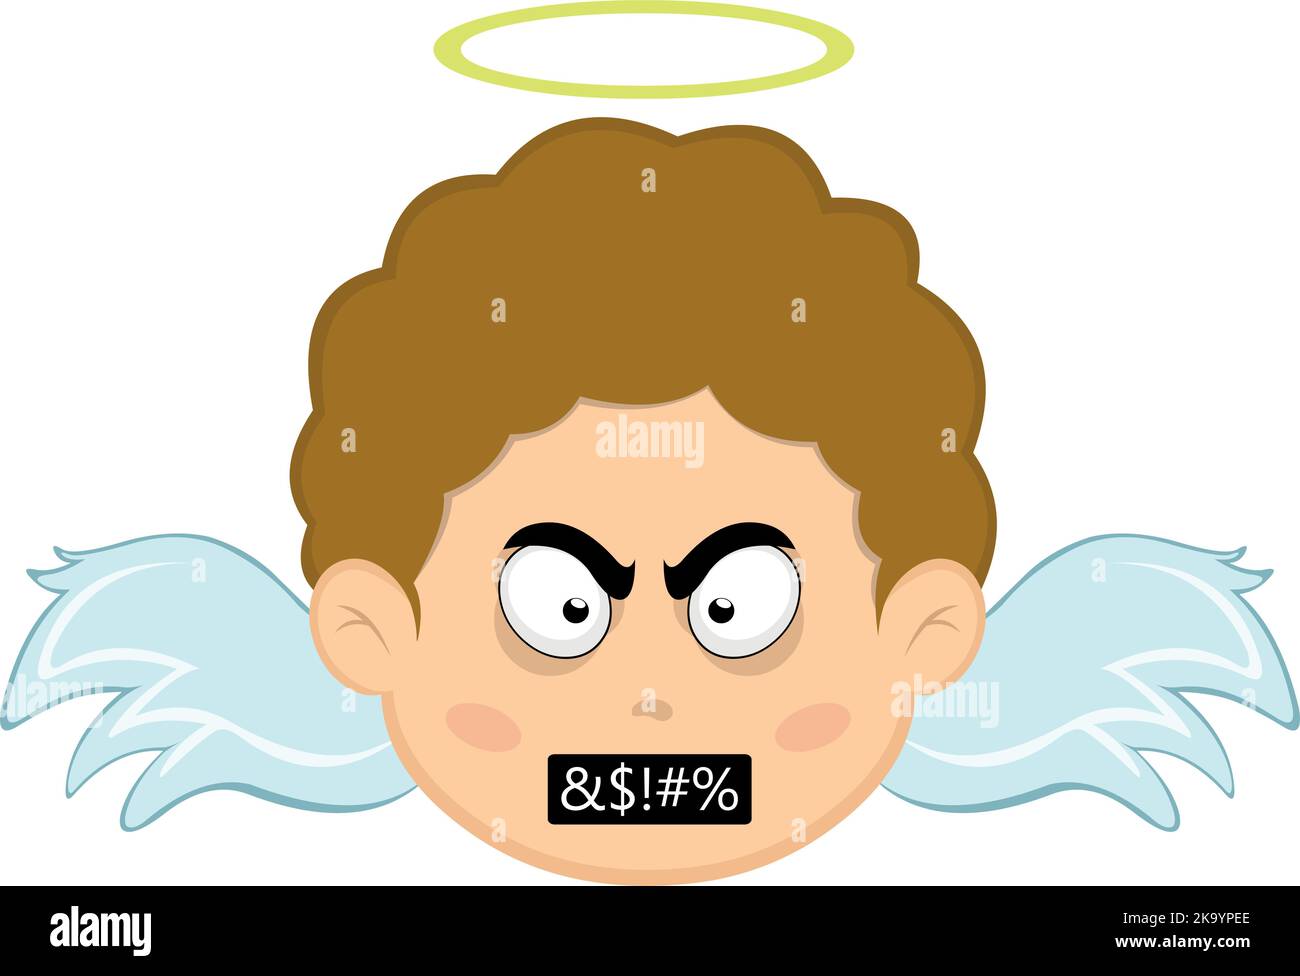 Vektor-Illustration eines Kinderengel-Zeichentrickfilms mit einem wütenden Ausdruck und einem zensierten Beleidigungstext im Mund Stock Vektor